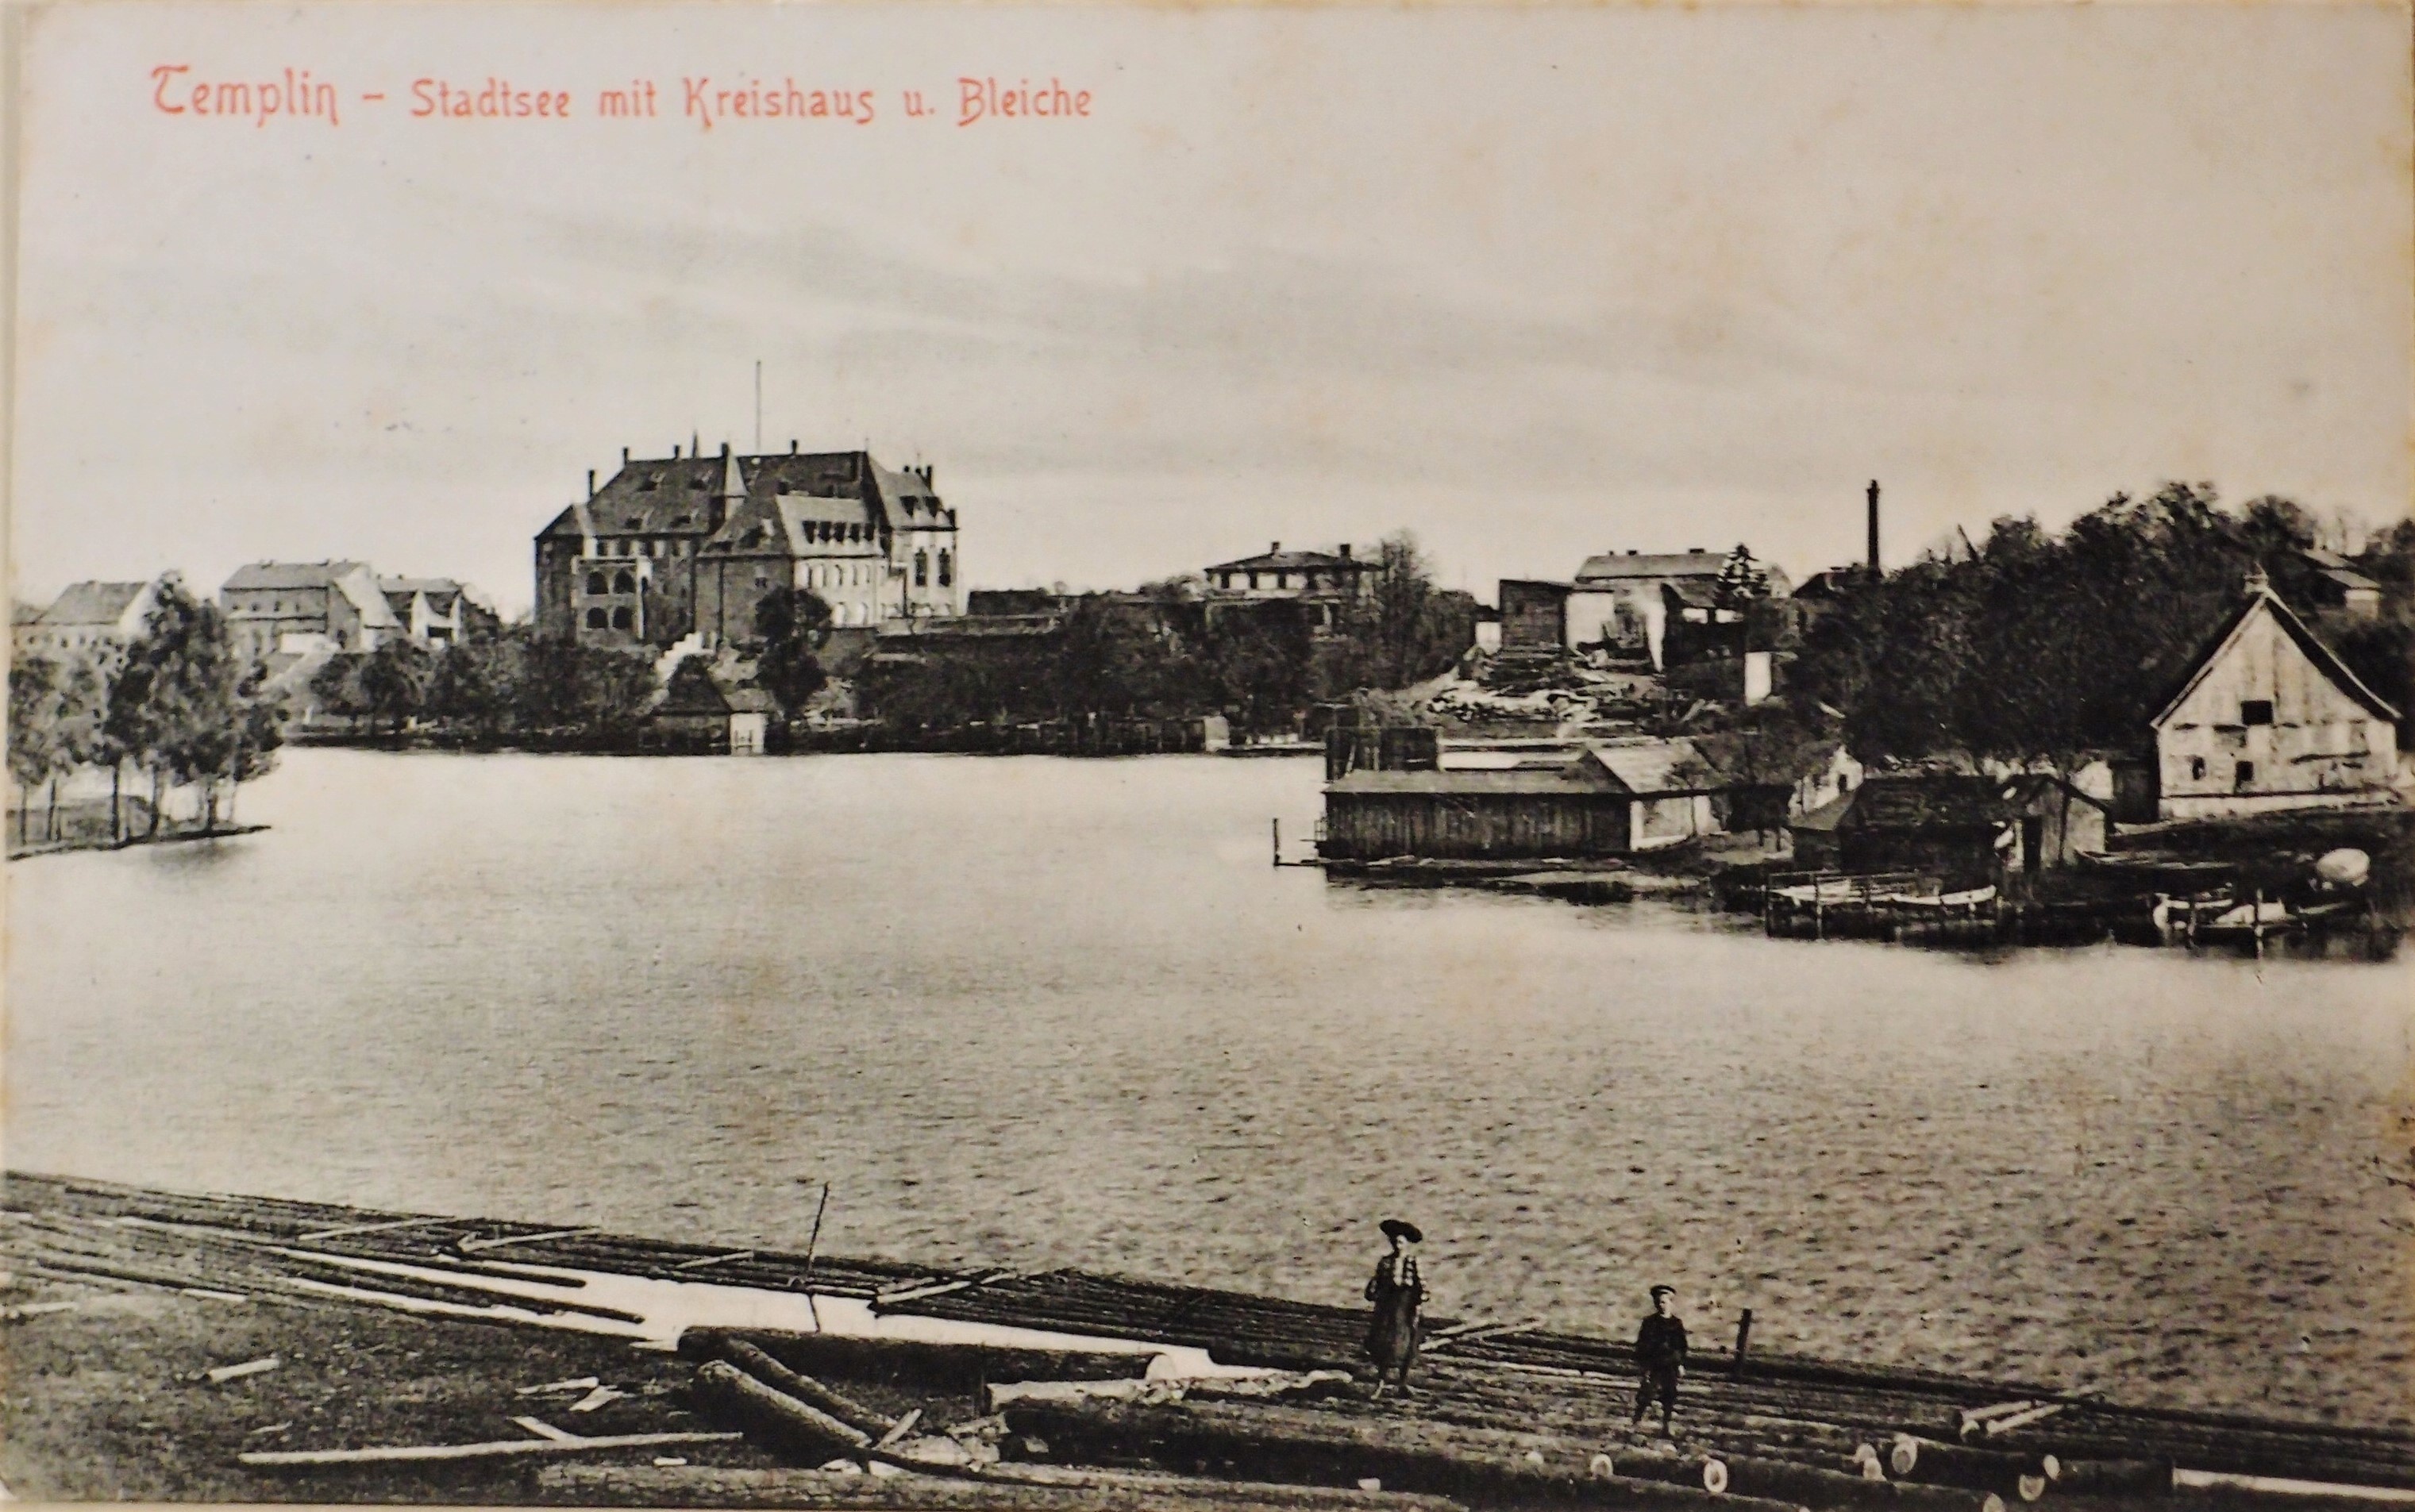 Ansichtskarte "Stadtsee mit Kreishaus u. Bleiche" in Templin (Museum für Stadtgeschichte Templin CC BY-NC-SA)